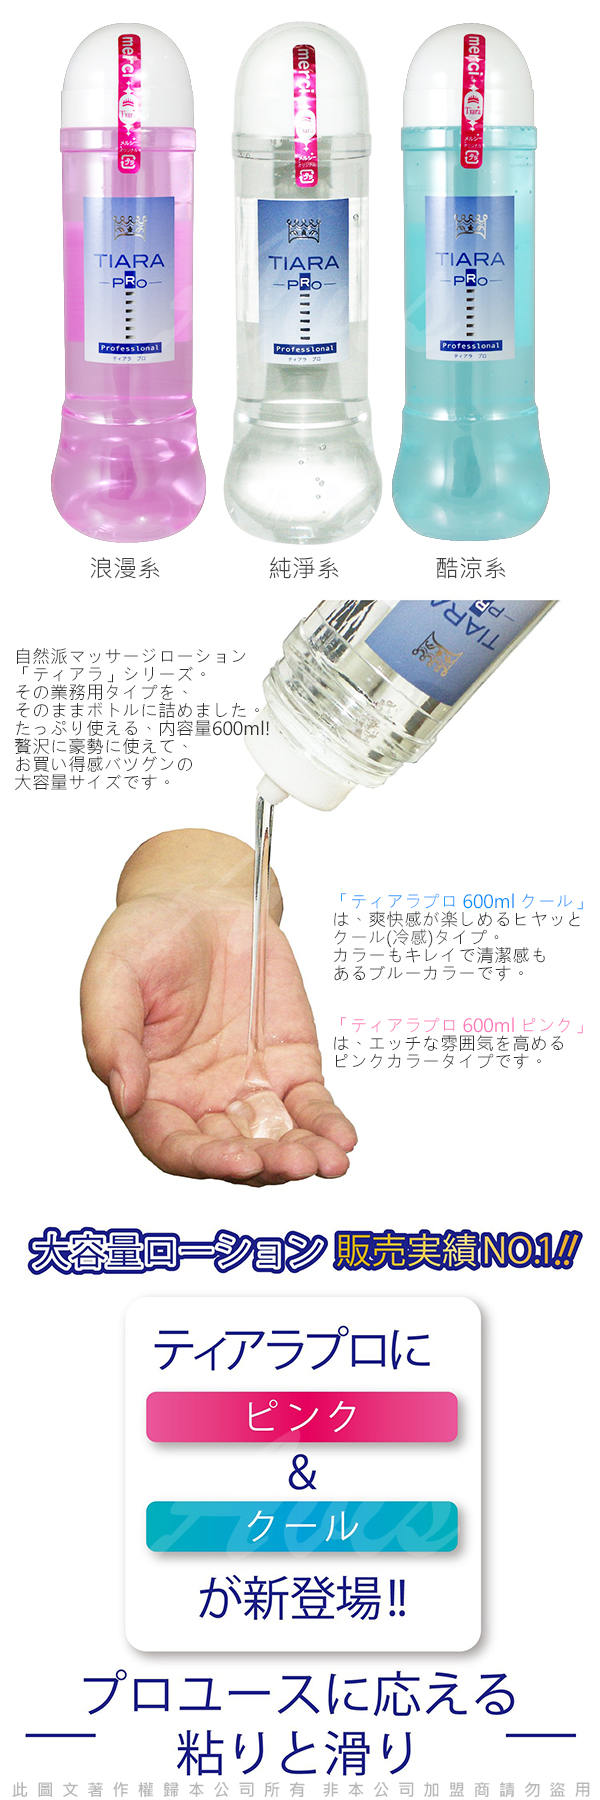 日本NPG Tiara Pro 自然派 水溶性潤滑液 600ml 純淨系 自然水溶舒適